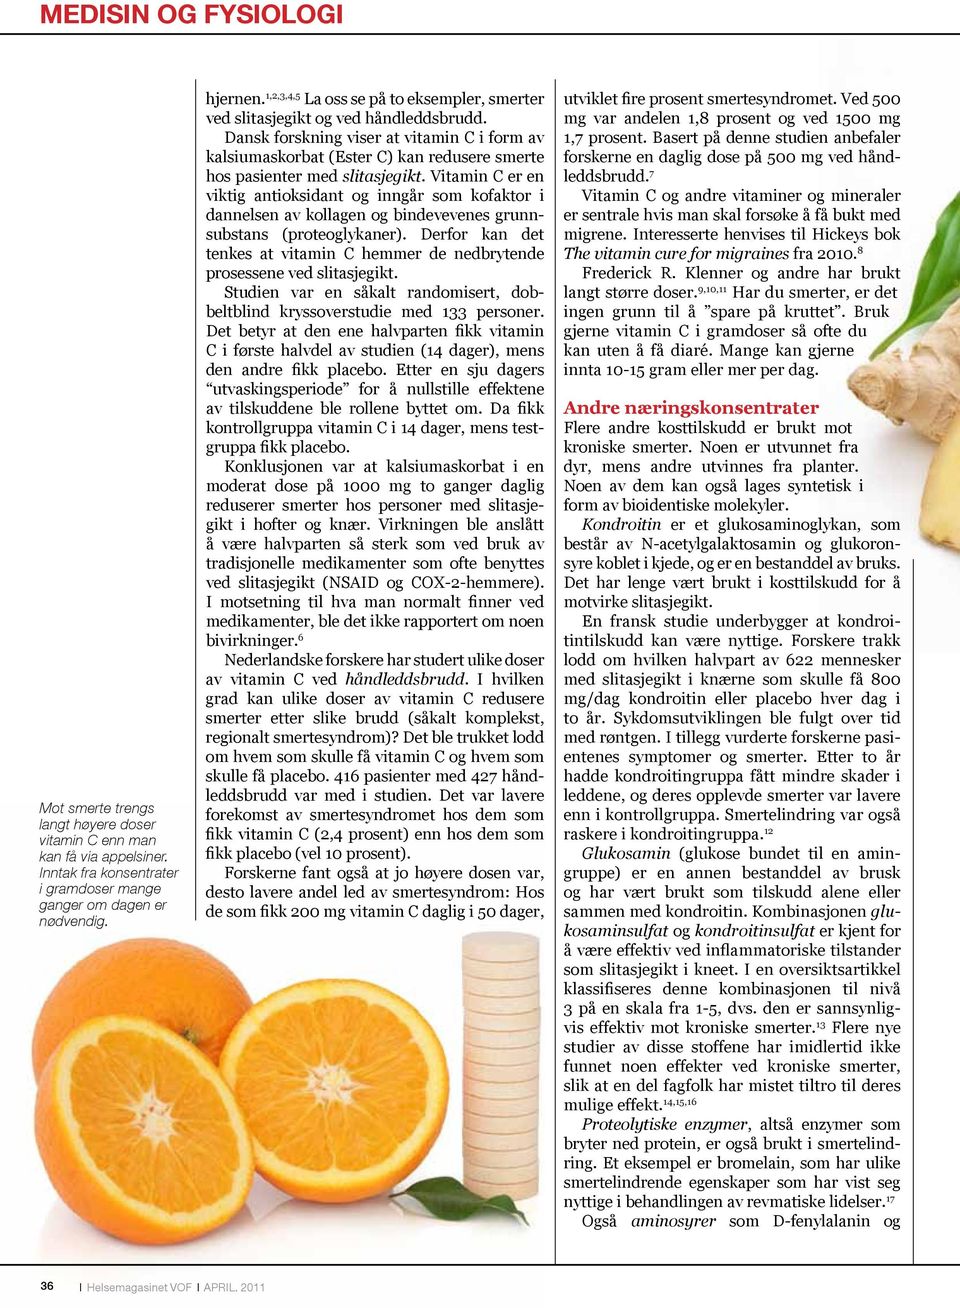 Dansk forskning viser at vitamin C i form av kalsiumaskorbat (Ester C) kan redusere smerte hos pasienter med slitasjegikt.